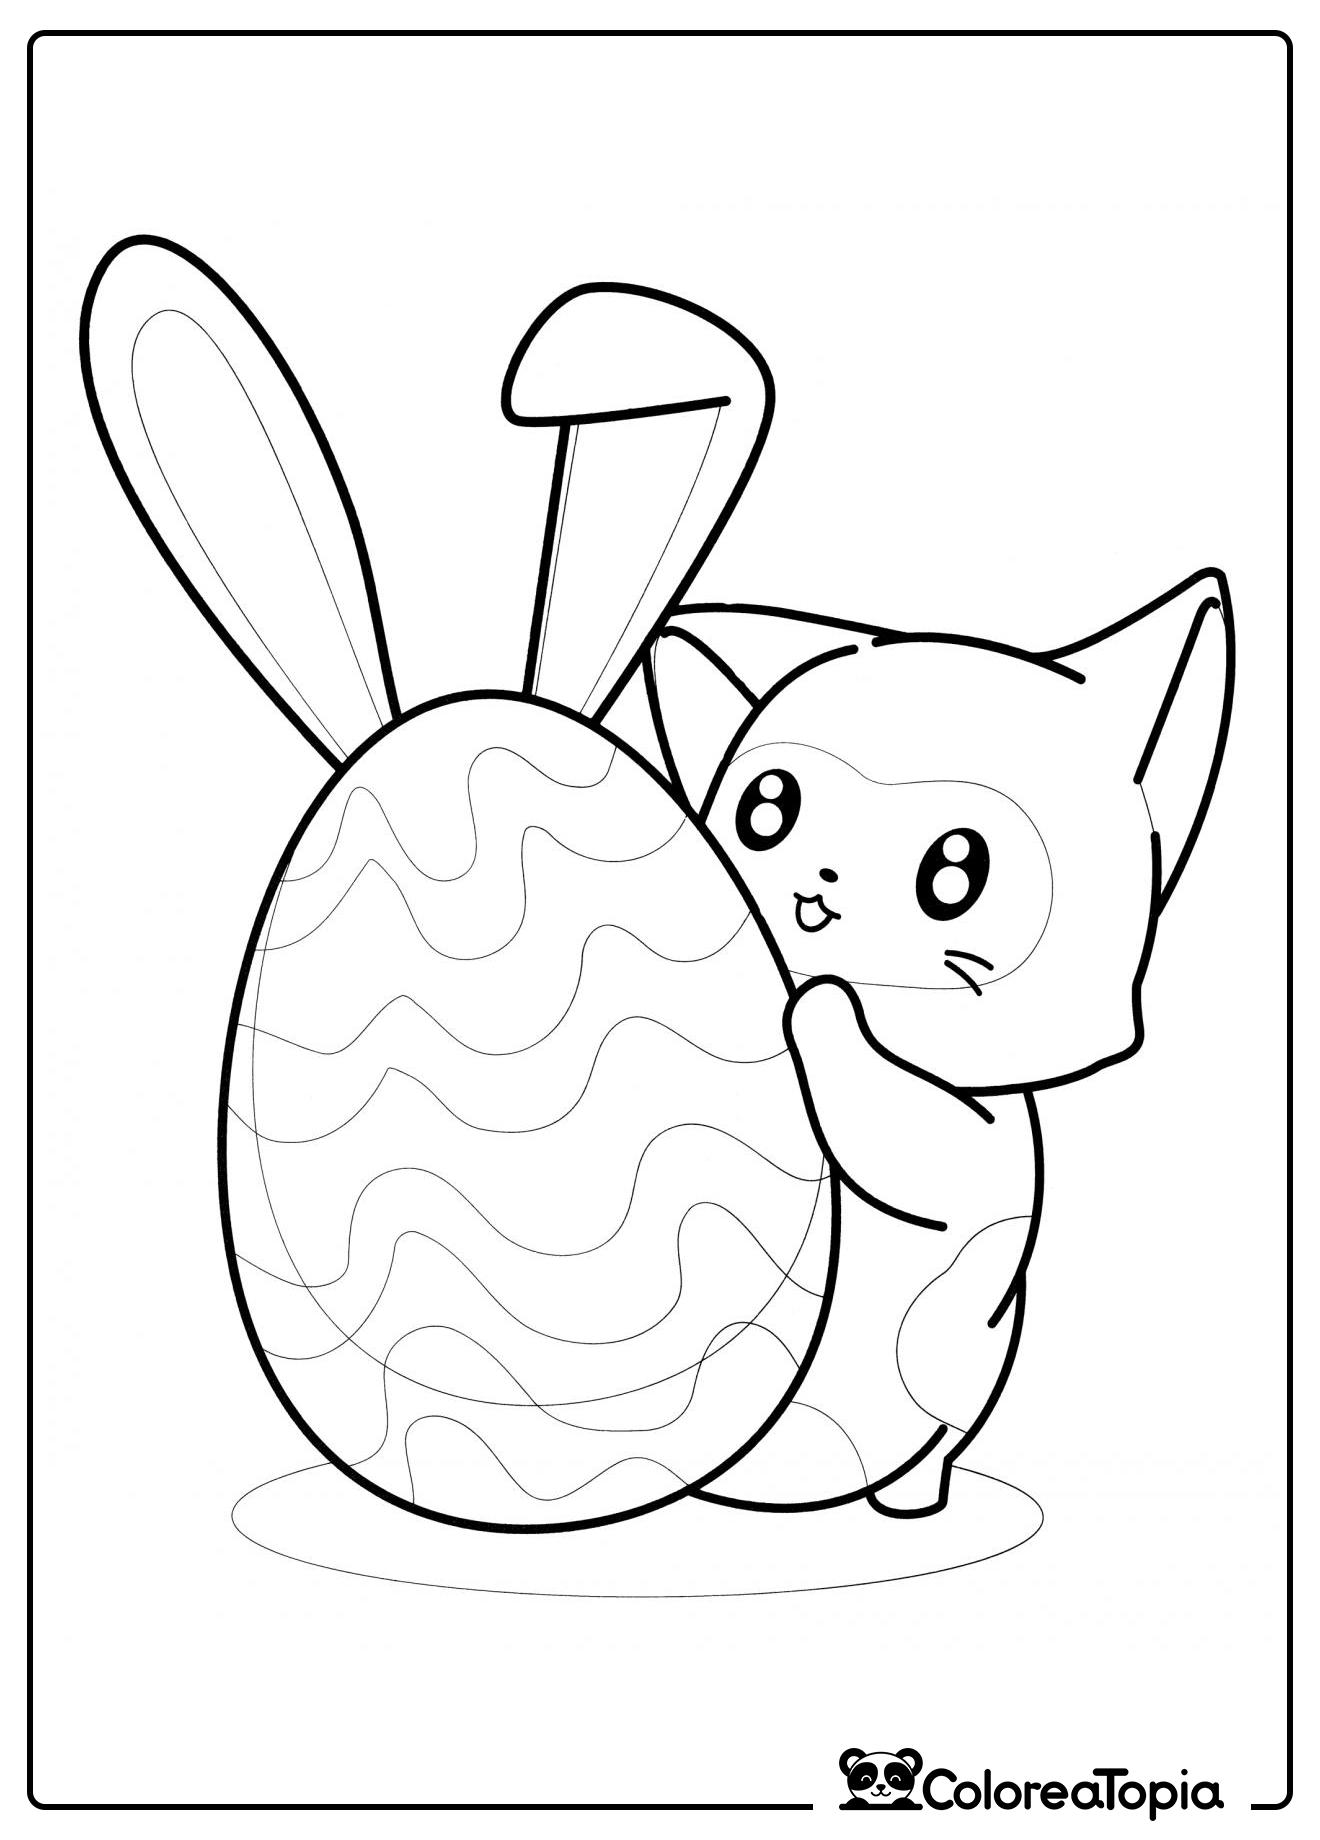 El gato sostiene un huevo con orejas - dibujo para colorear